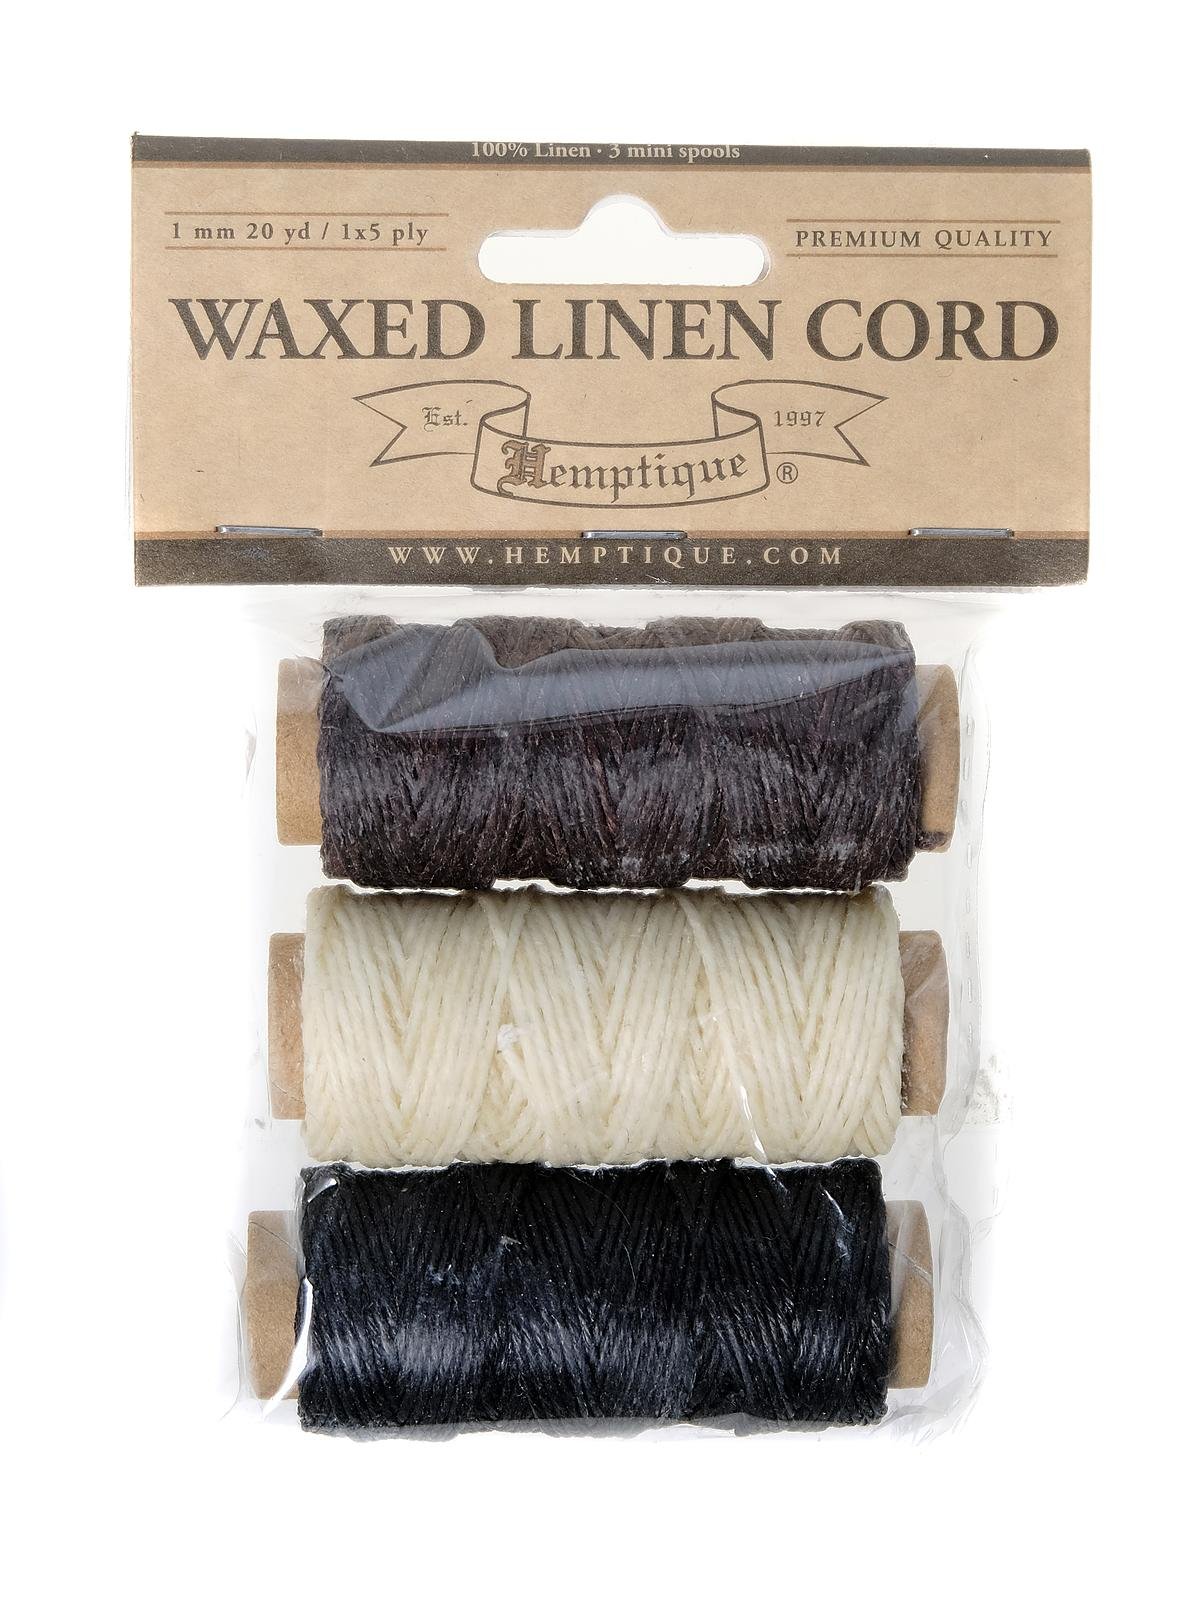 Hemptique - Waxed Linen Cord